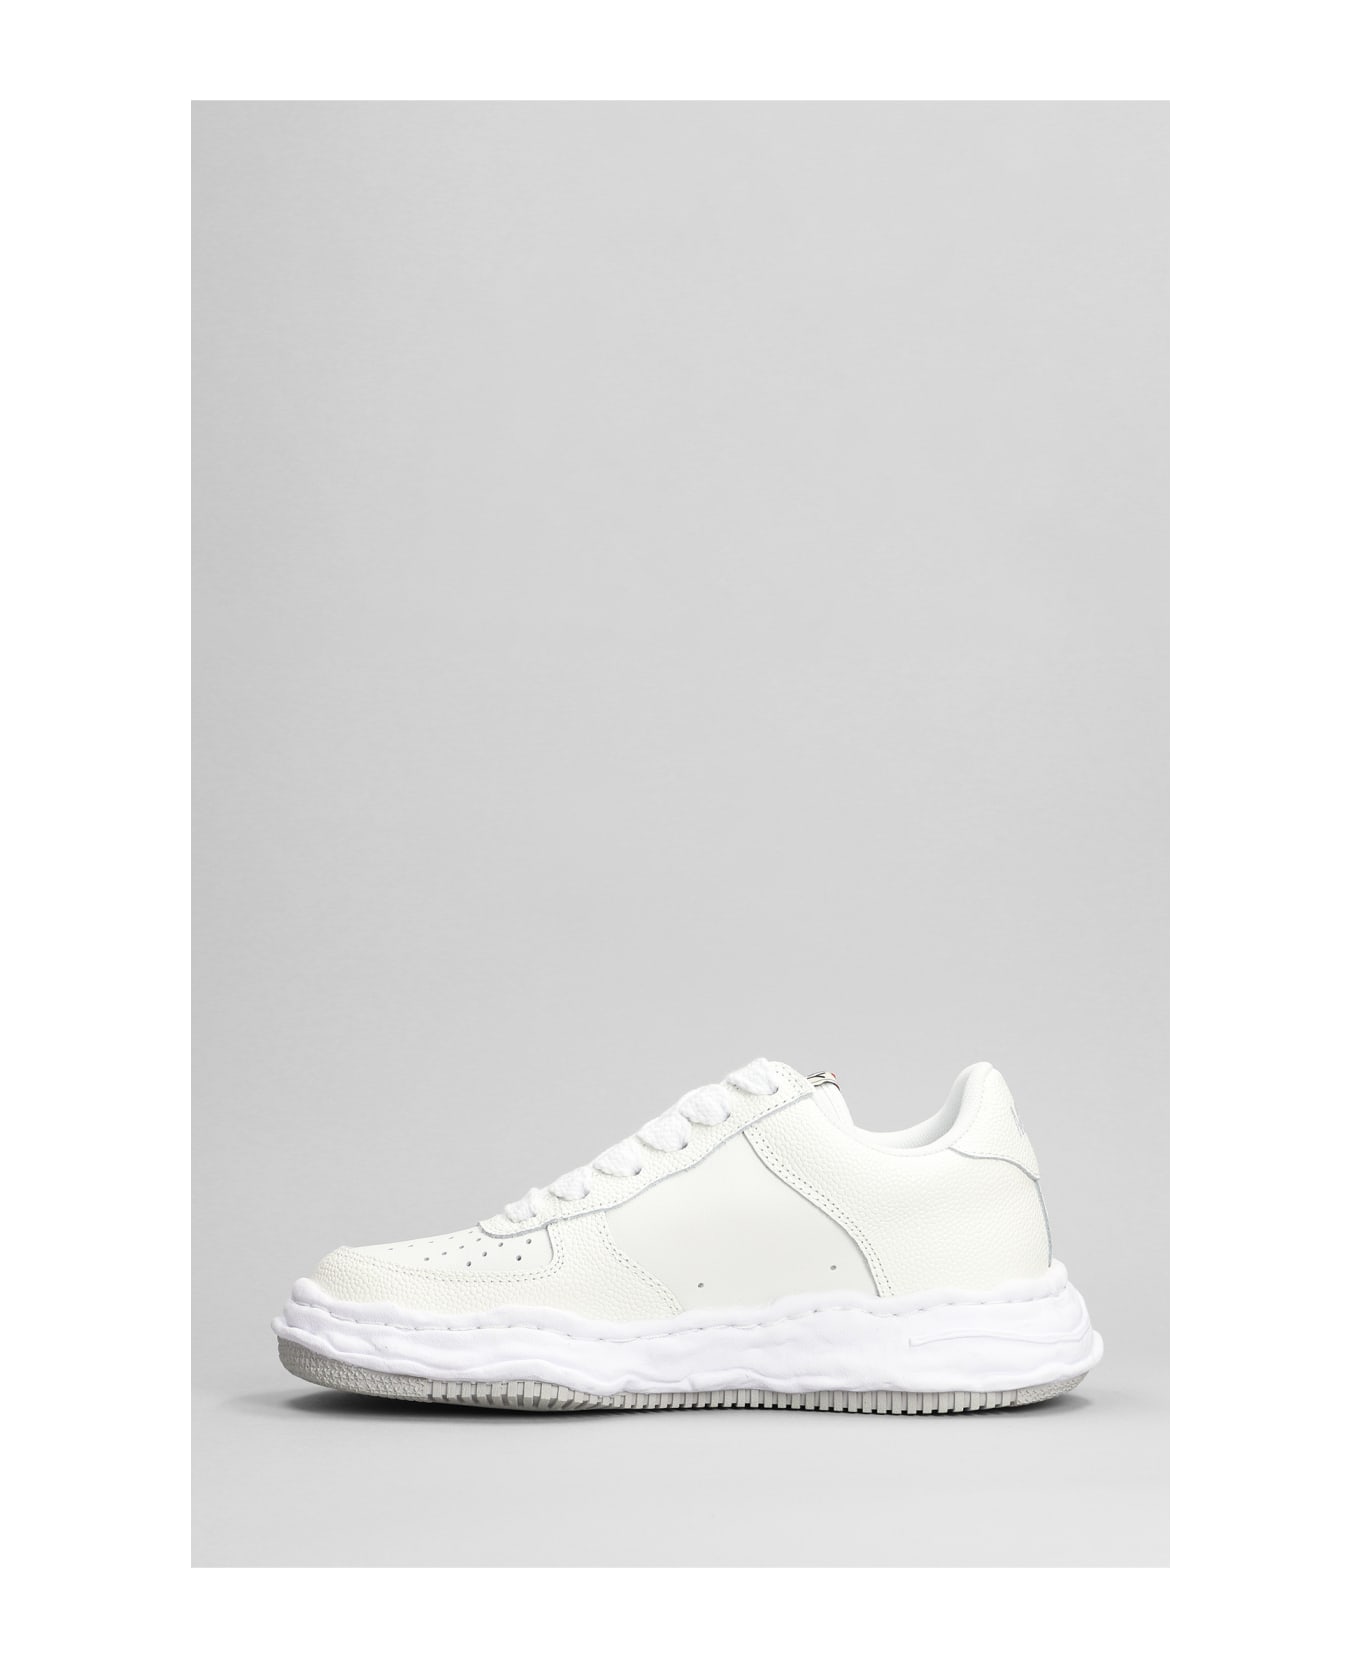 Mihara Yasuhiro Wayne Sneakers In White Leather - white